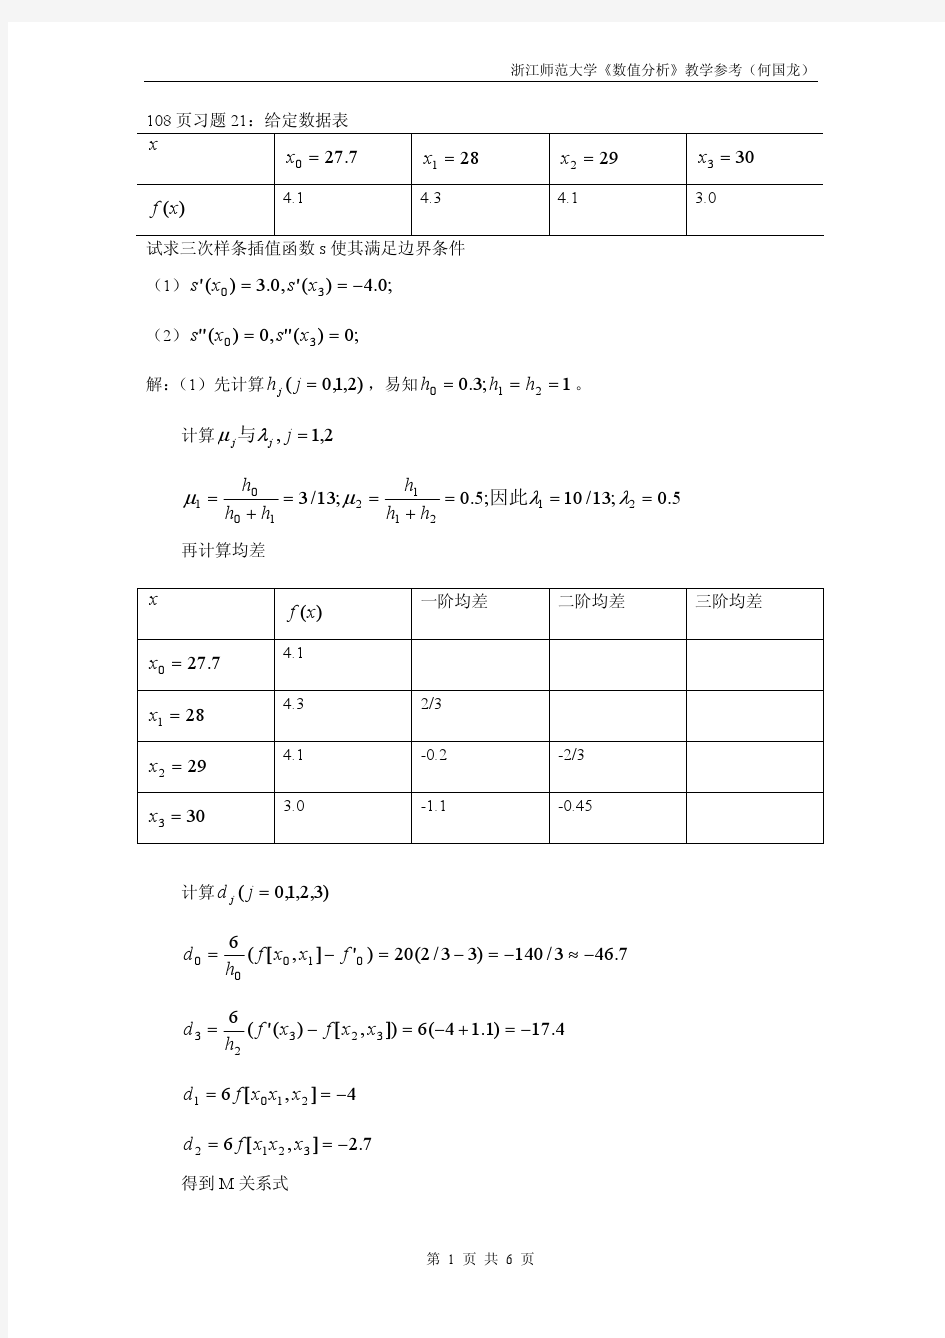 李庆扬,王能超,第4版数值分析答案ex2122